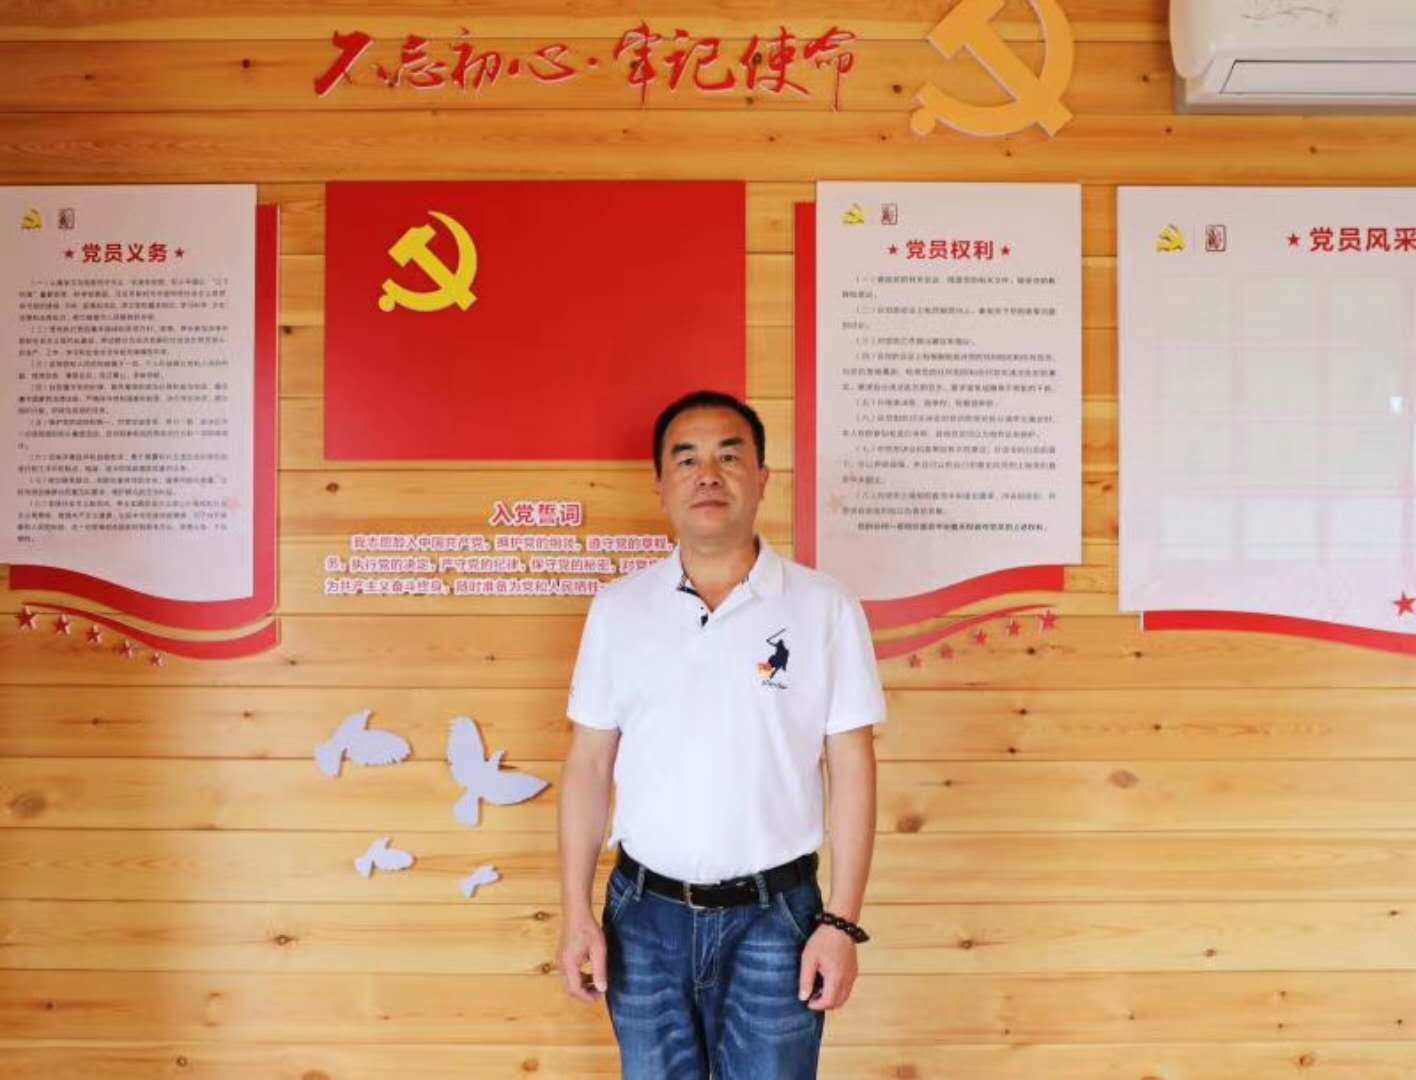 2018.6.23企业党建：在纪念中国共产党诞辰97周年到来之际，北洋镇农业示范小镇当支部、台州绿沃川农业有限公司党小组在北洋镇党委的重视和关怀下成立了。